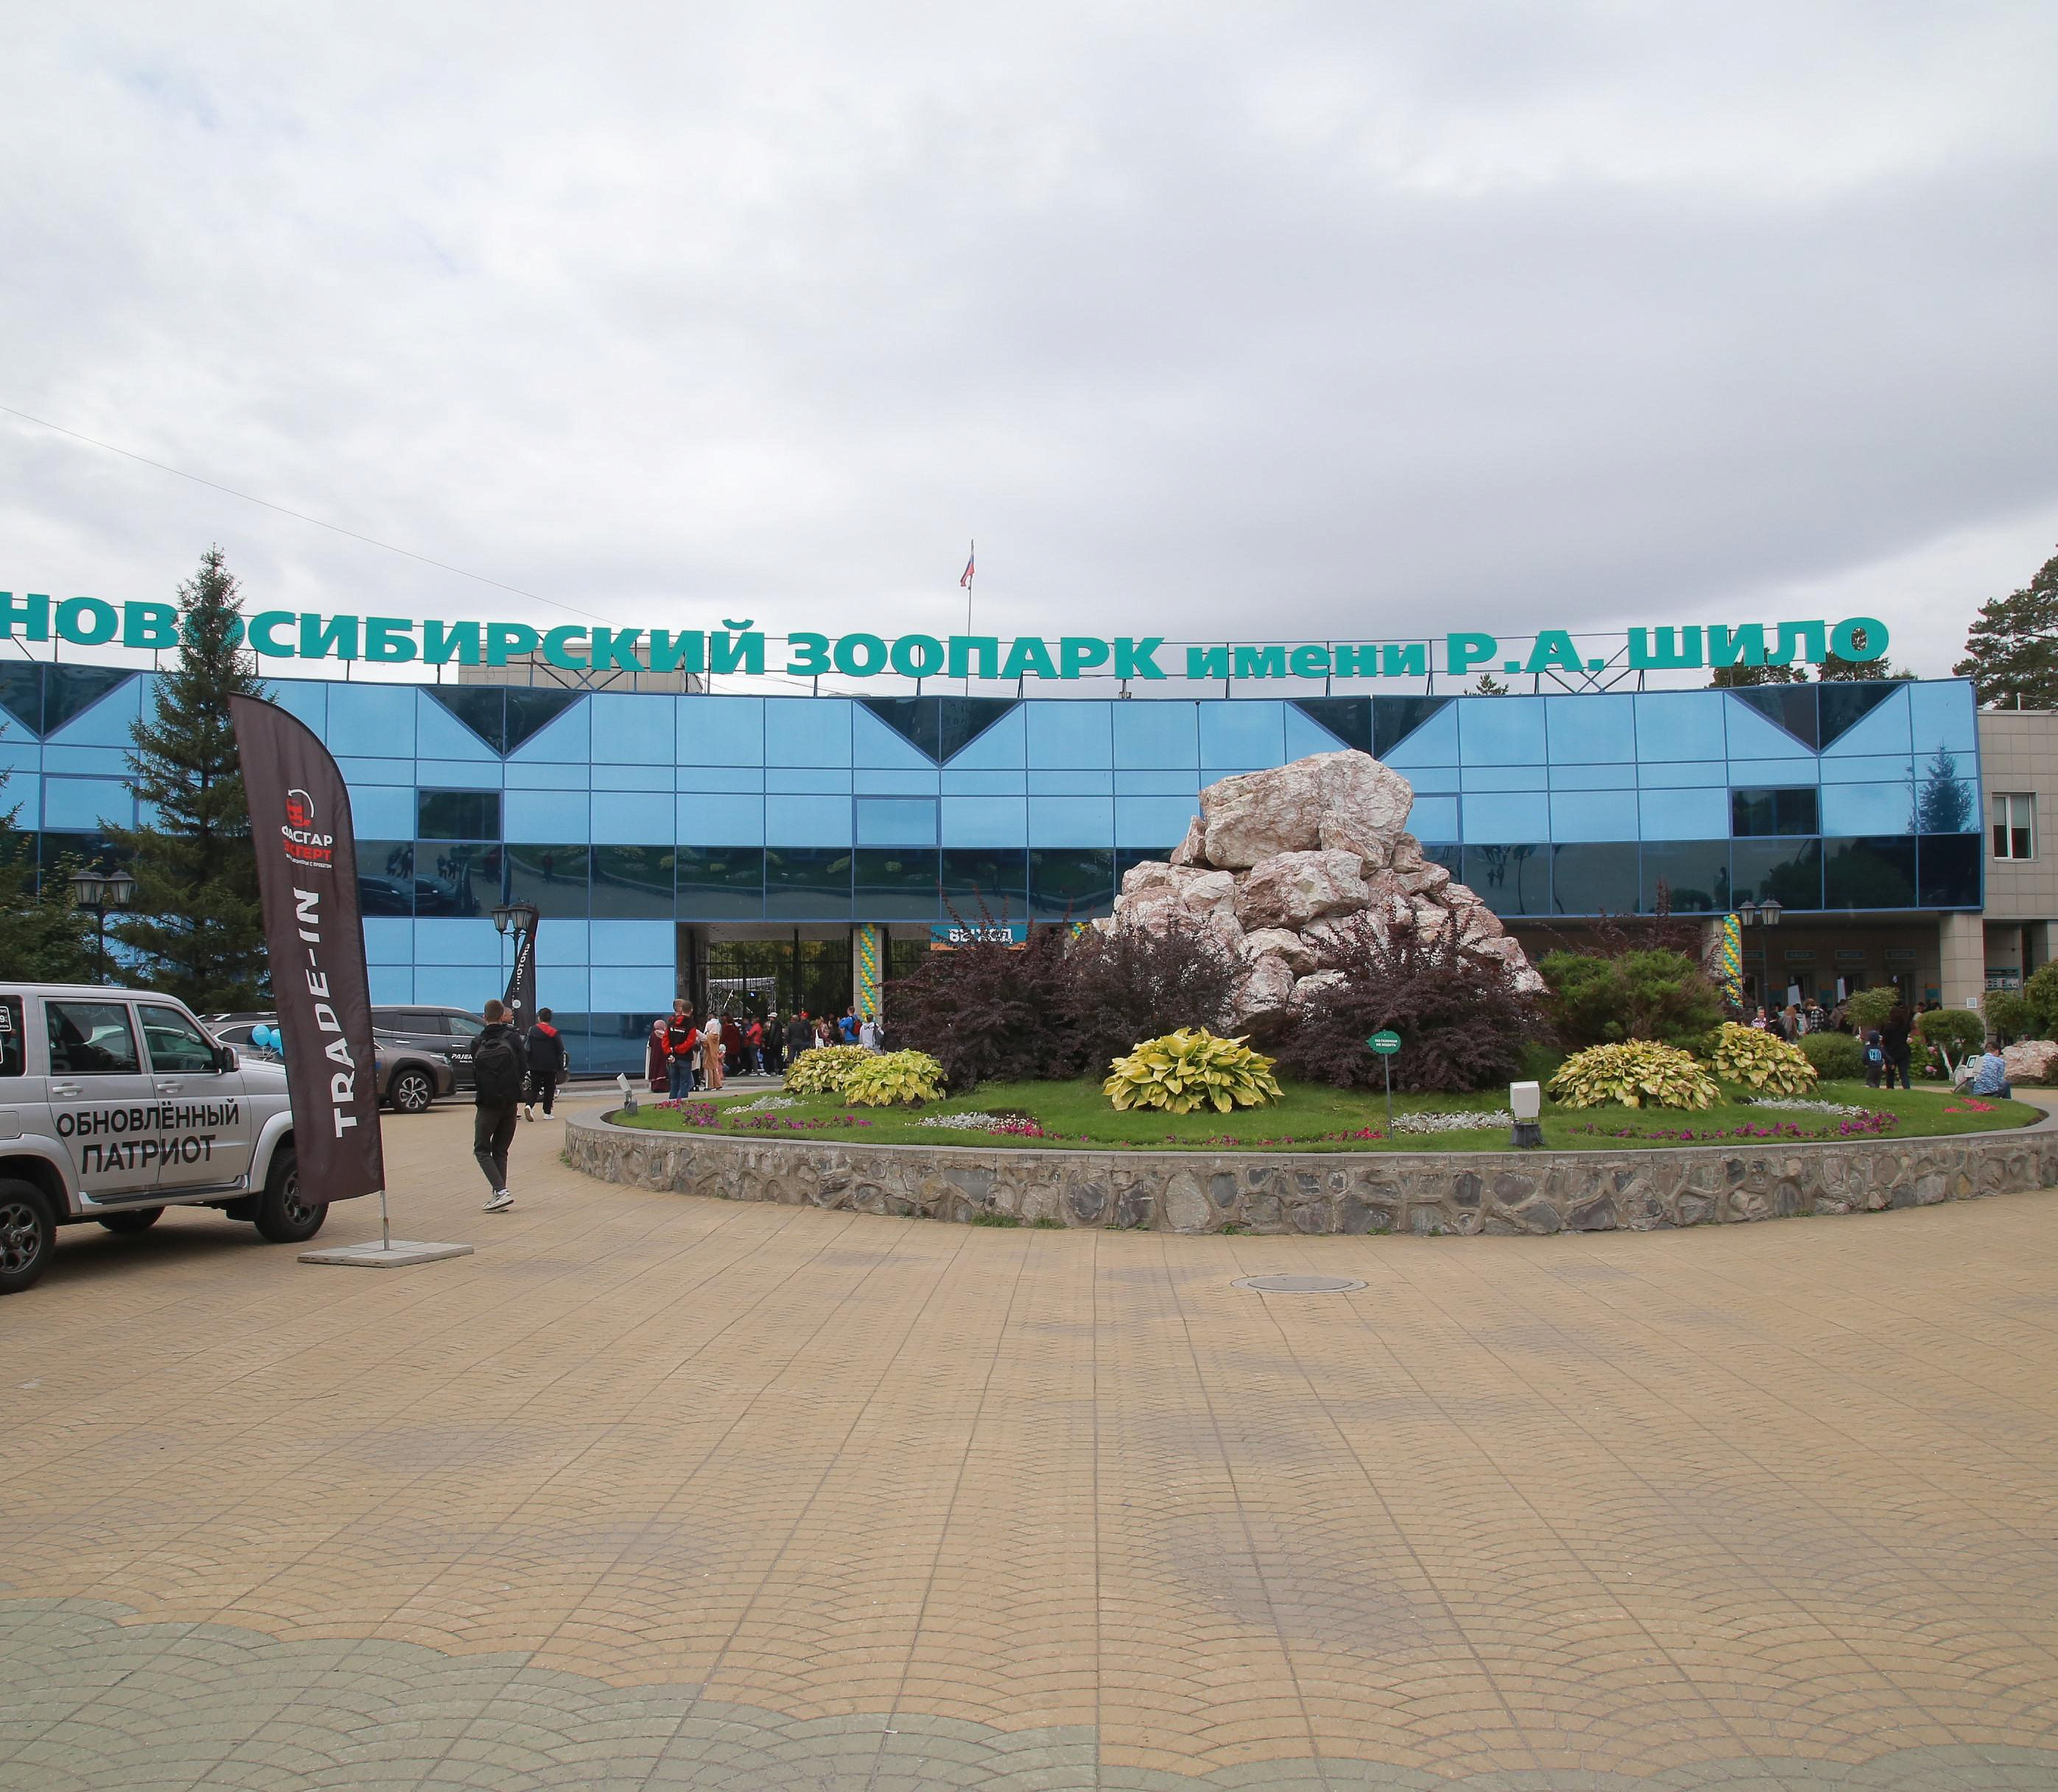 Два венценосных журавля из Новосибирского зоопарка улетели в Казань